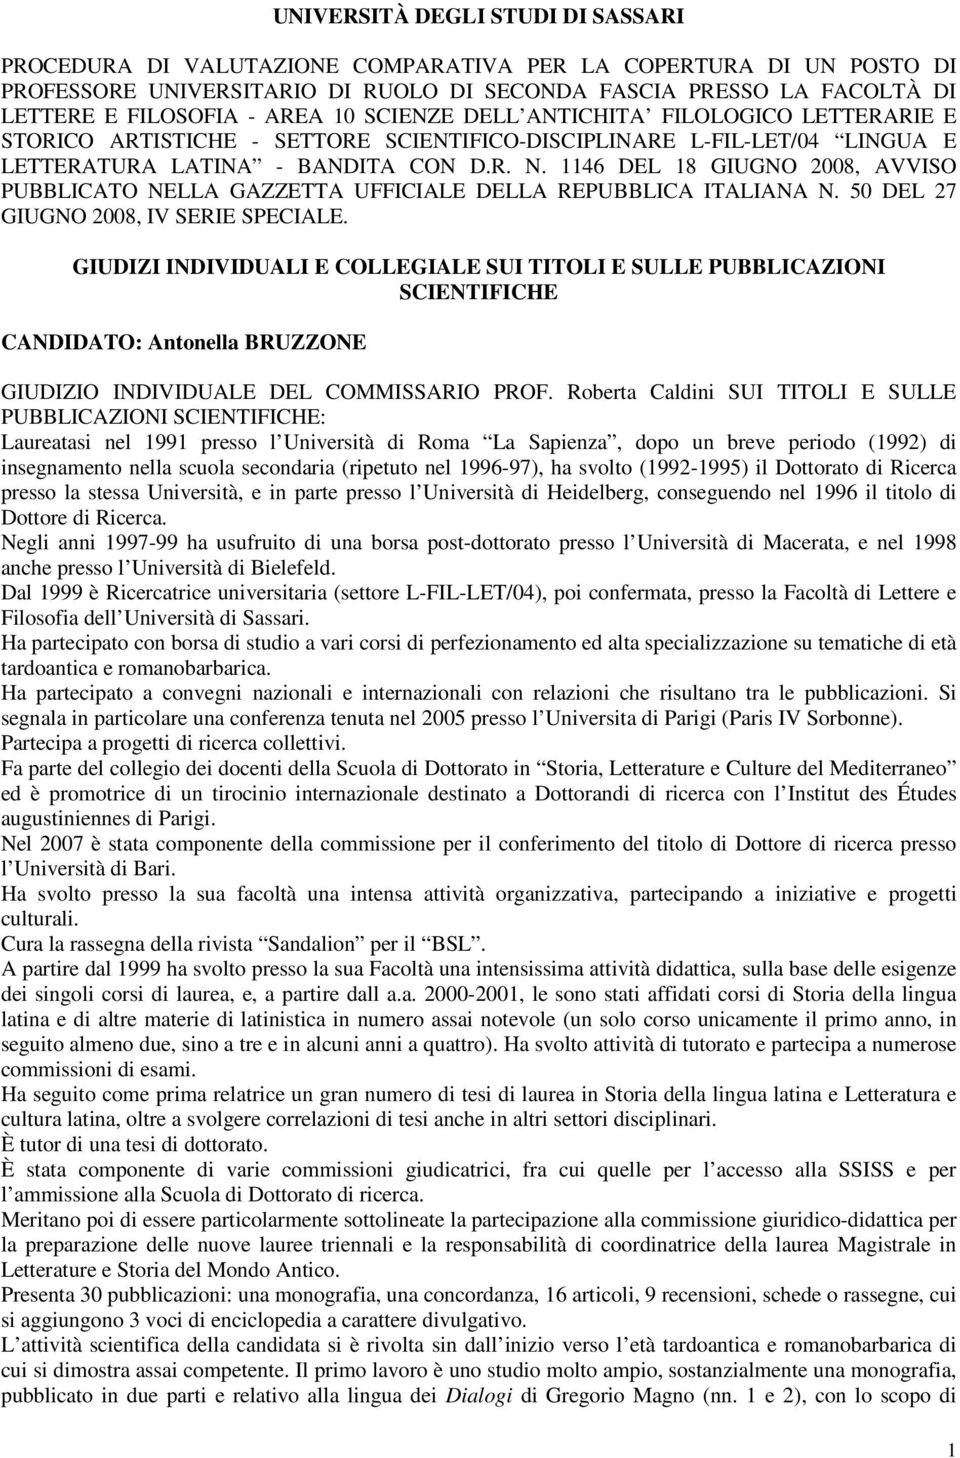 1146 DEL 18 GIUGNO 2008, AVVISO PUBBLICATO NELLA GAZZETTA UFFICIALE DELLA REPUBBLICA ITALIANA N. 50 DEL 27 GIUGNO 2008, IV SERIE SPECIALE.